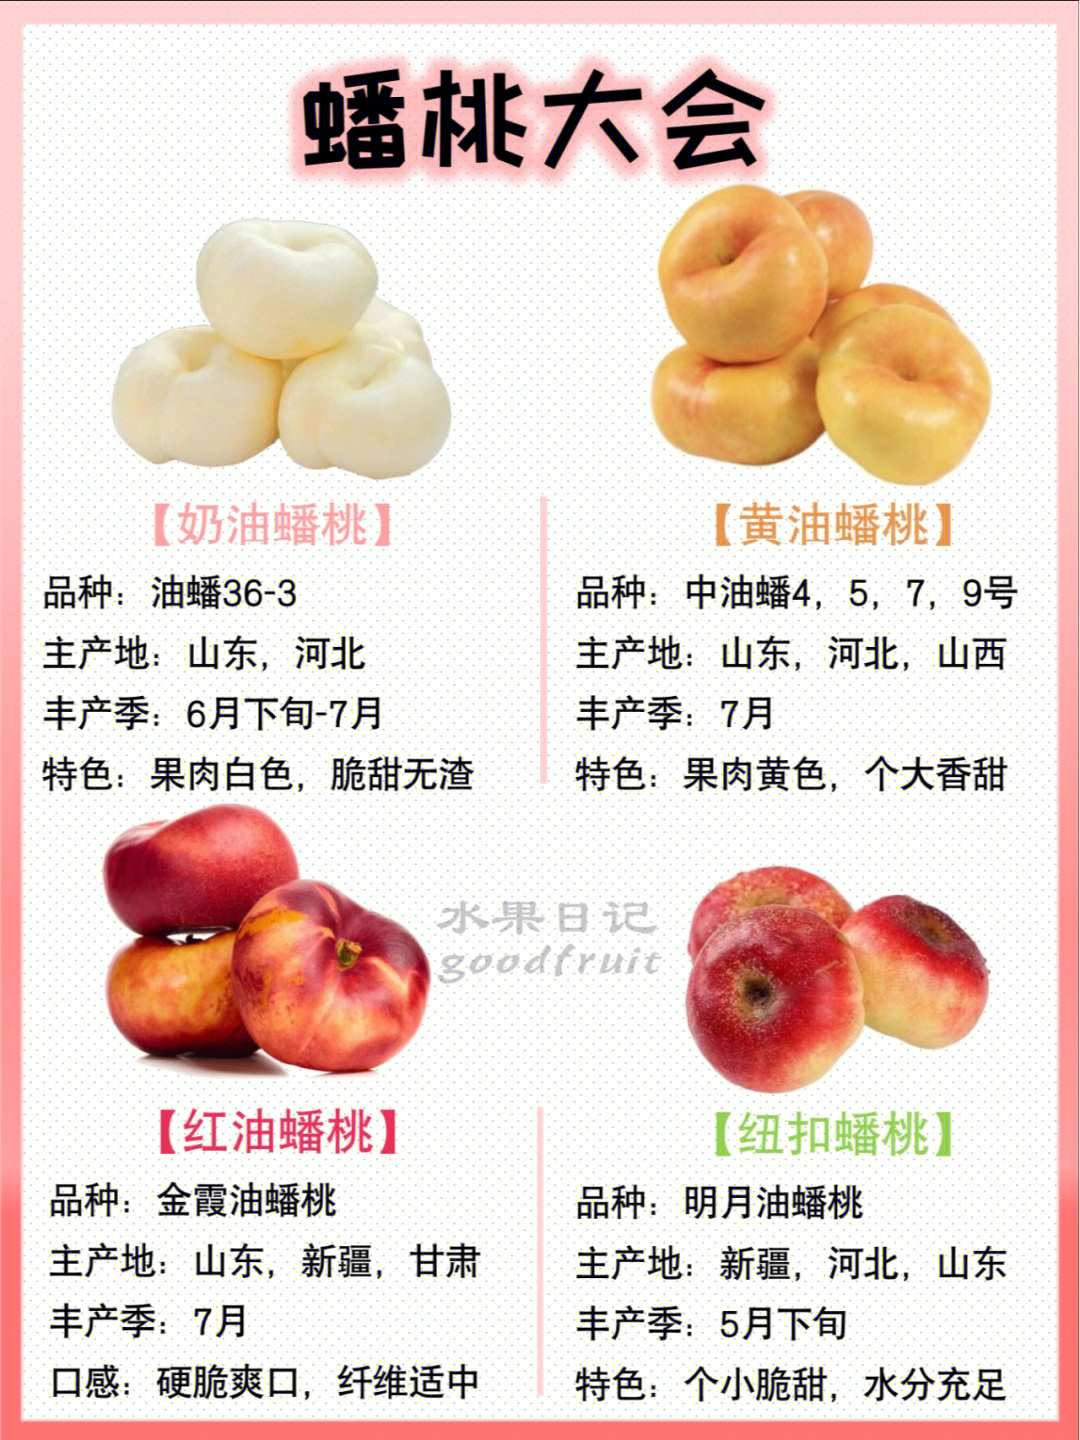 桃子的品种甚多(1000以上),蟠桃至少几十种主要有:1